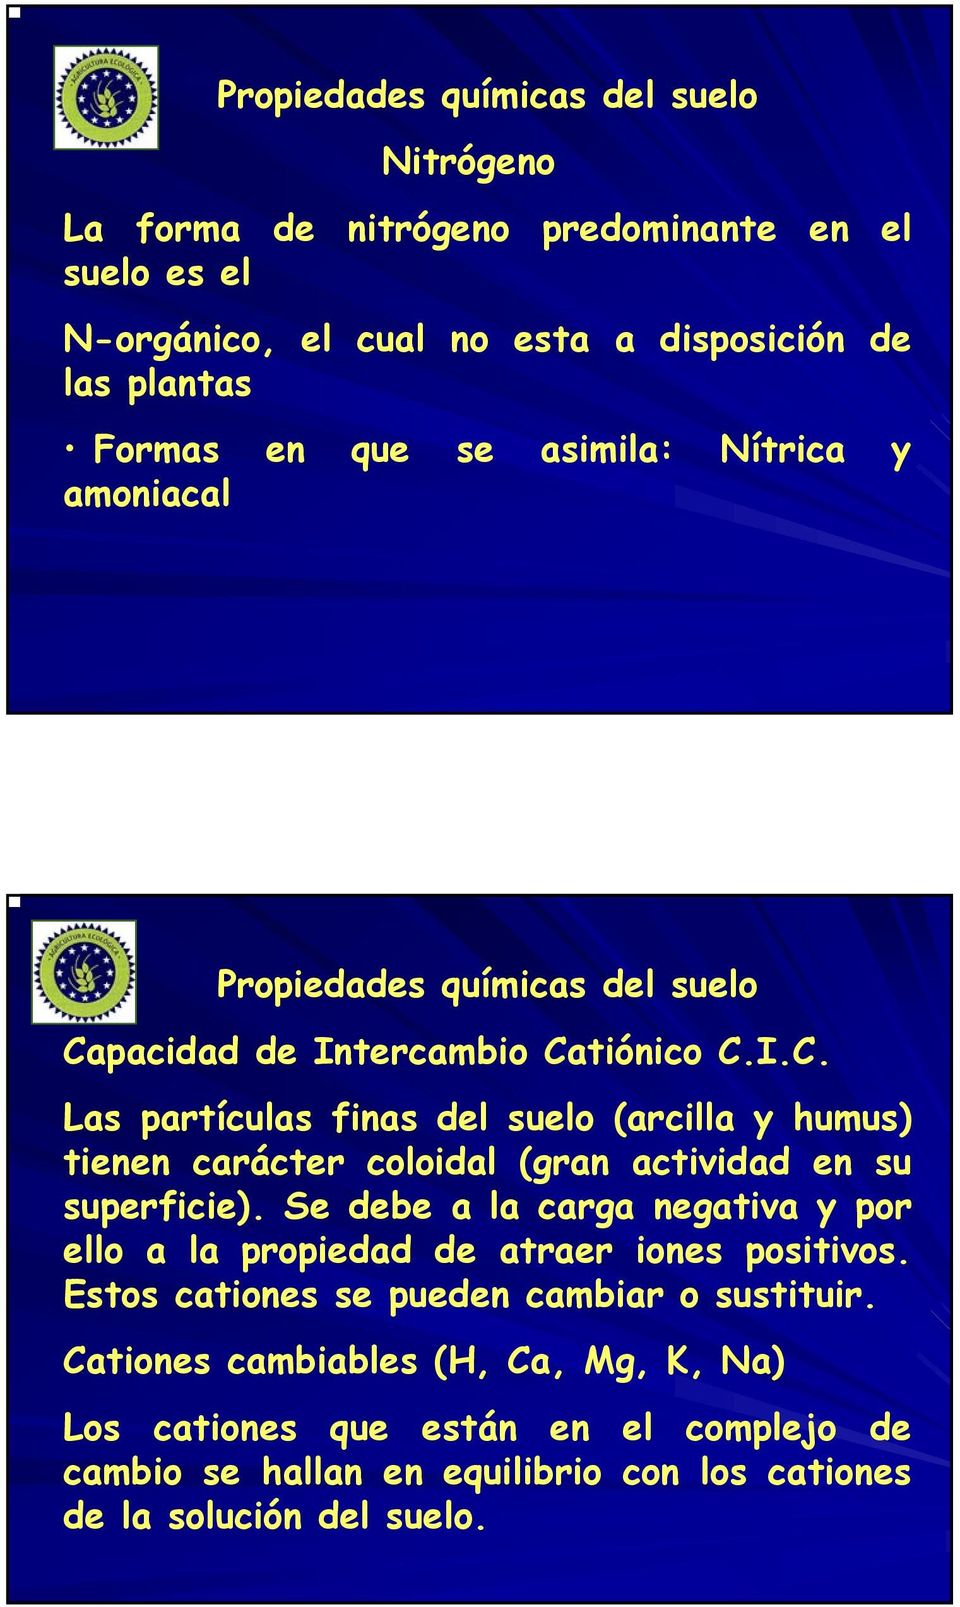 pacidad de Intercambio Catiónico C.I.C. Las partículas finas del suelo (arcilla y humus) tienen carácter coloidal (gran actividad en su superficie).